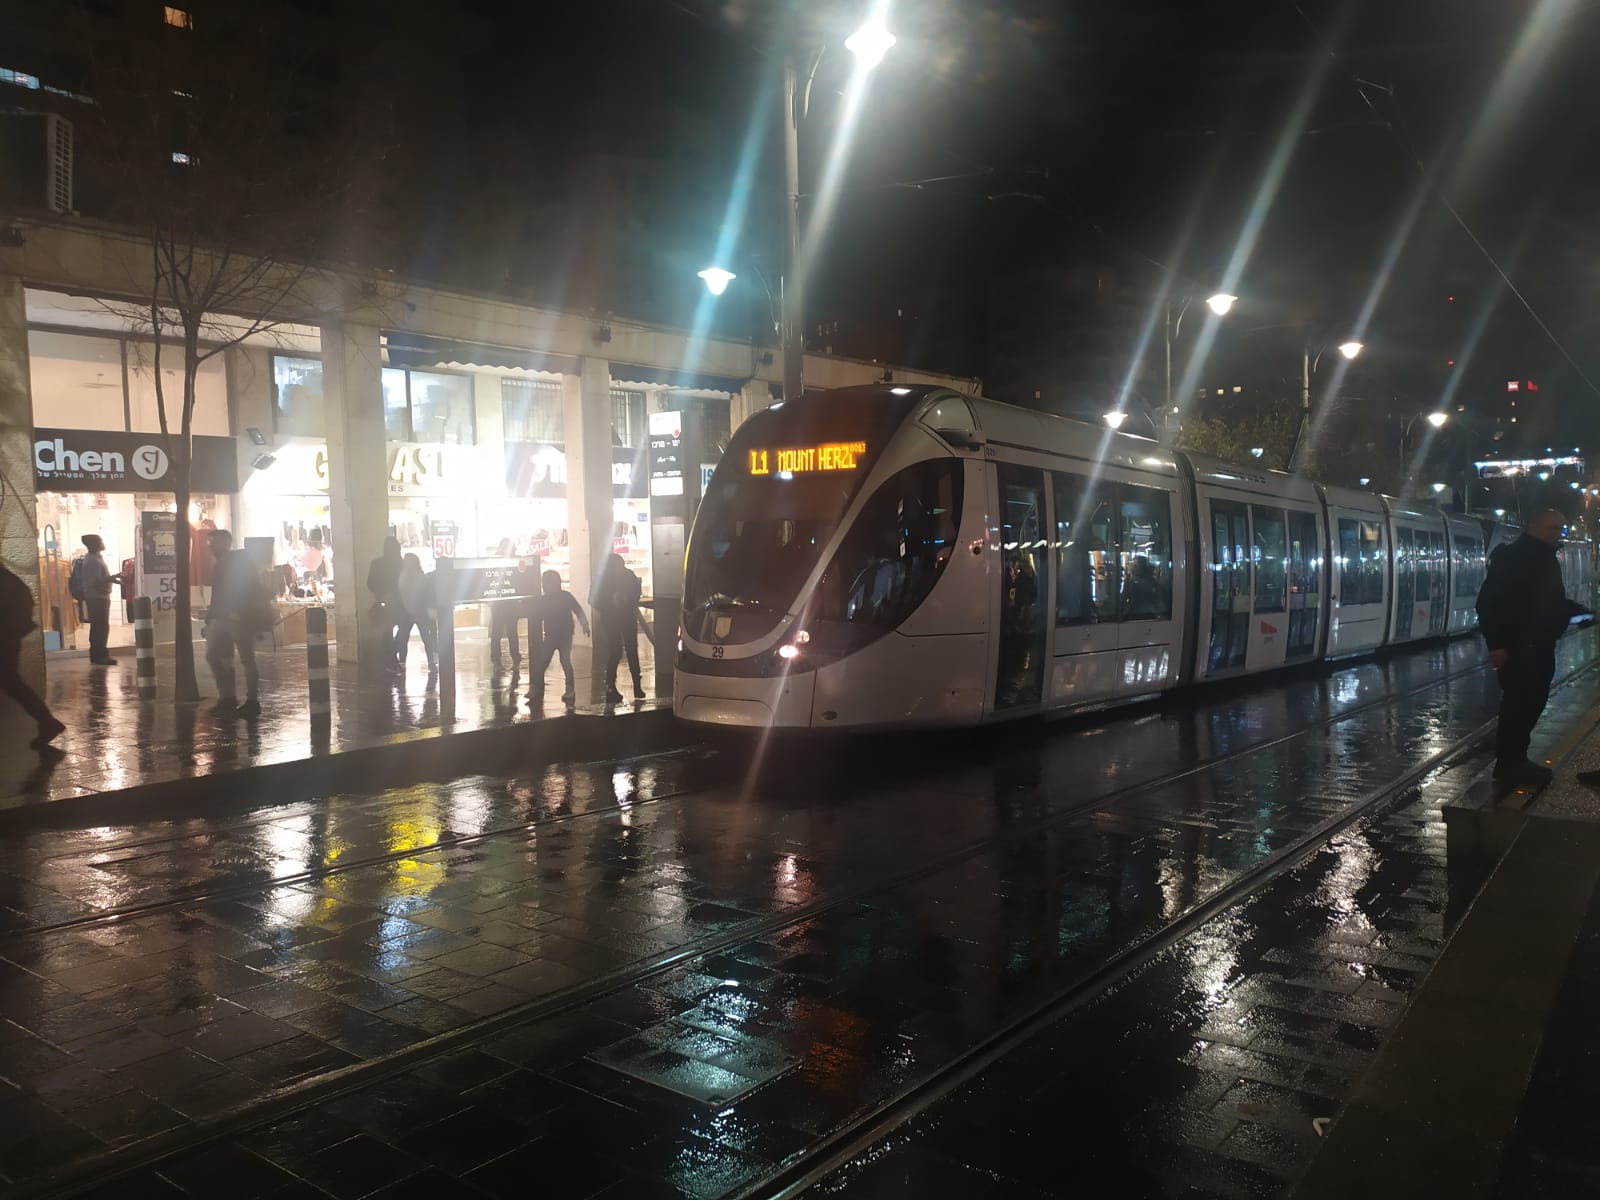 הרכבת הקלה, חורף בירושלים (צילום: שלומי הלר)